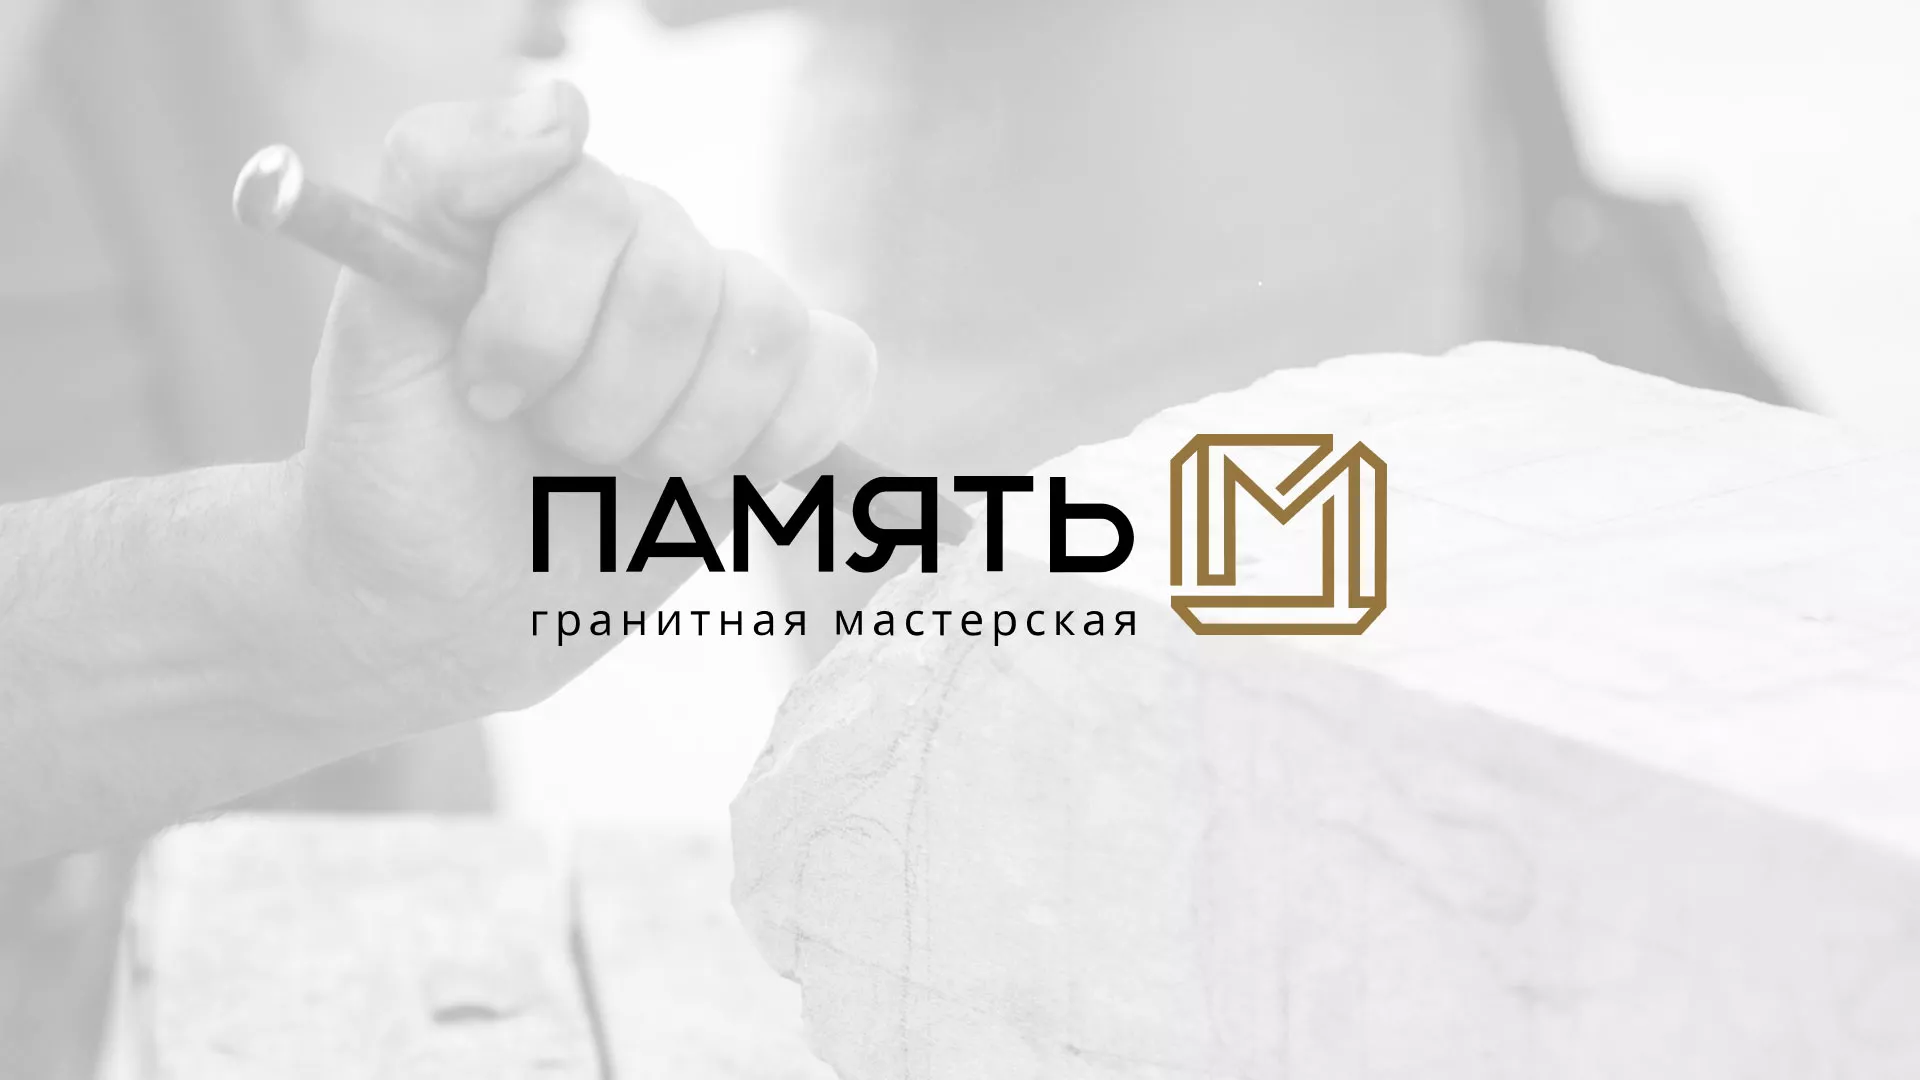 Разработка логотипа и сайта компании «Память-М» в Мантурово